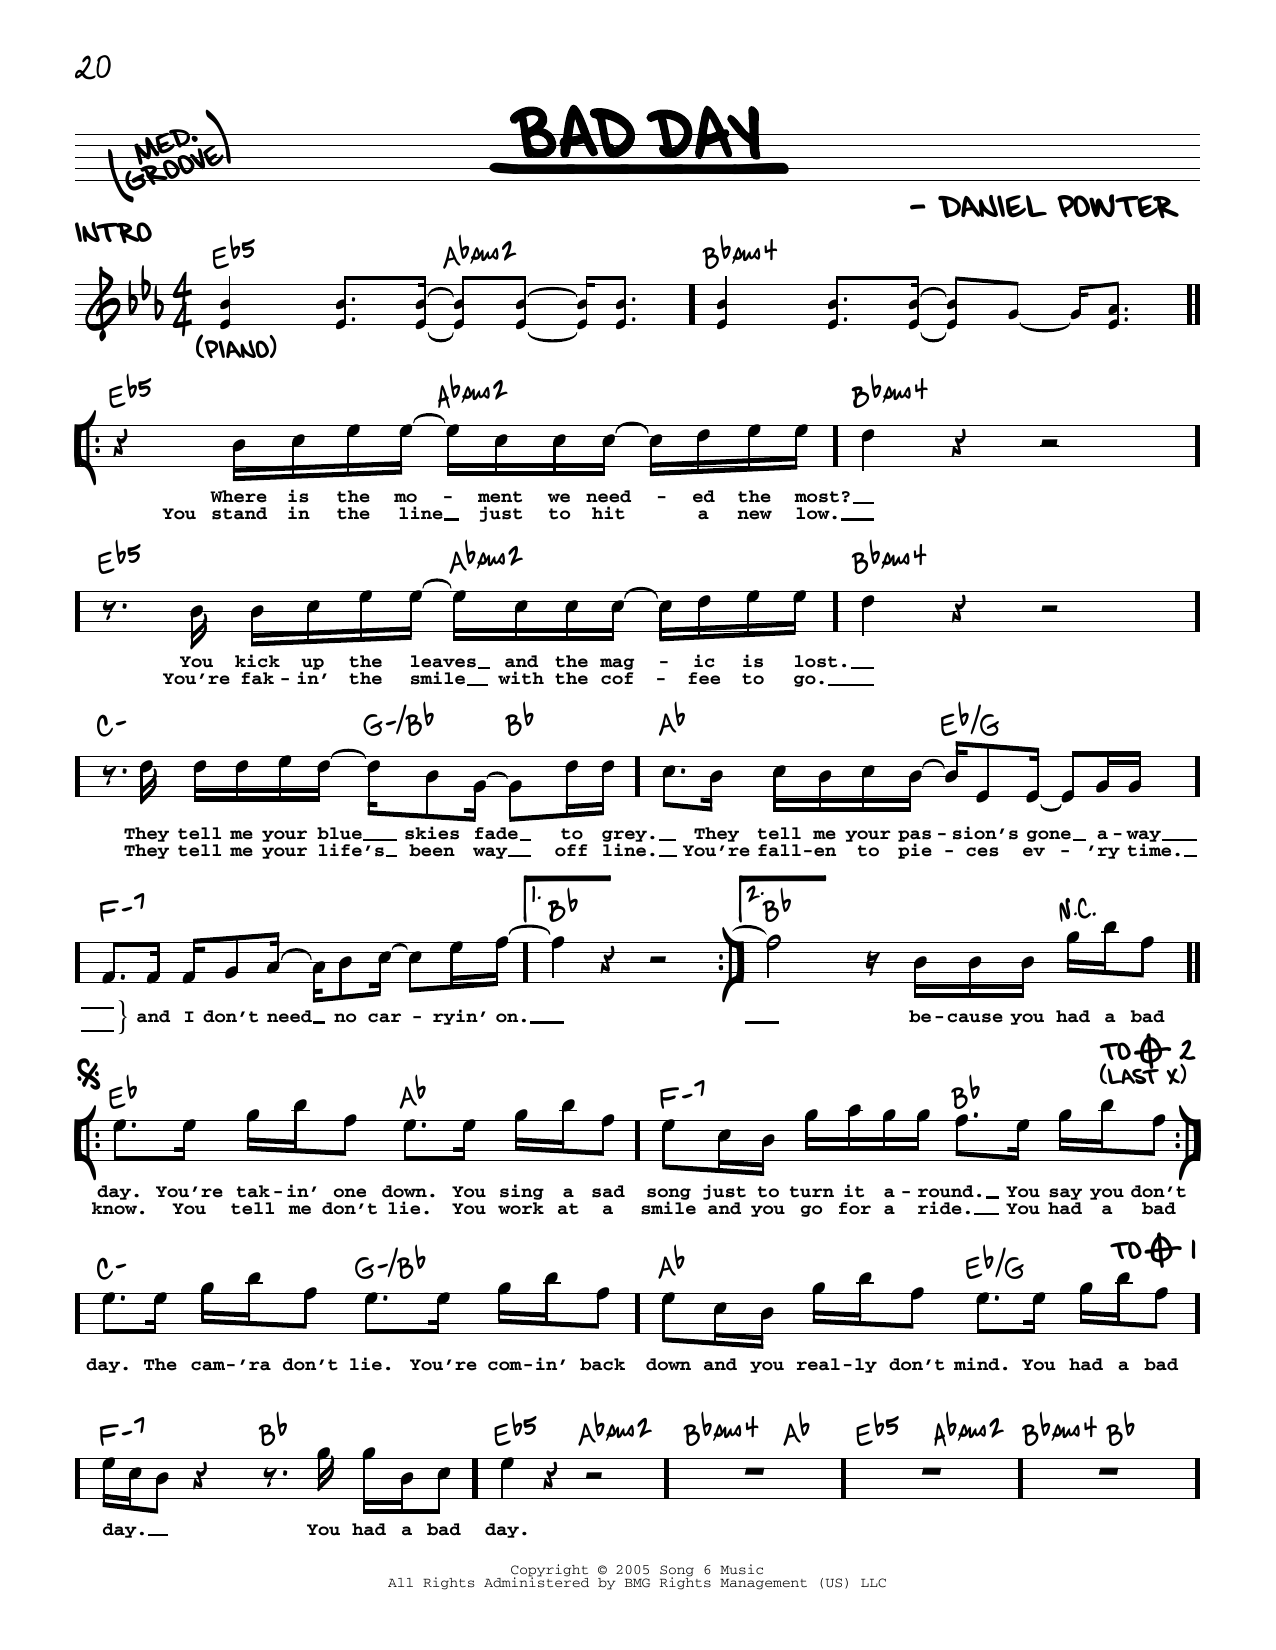 Bad Day Sheet Music Daniel Powter Real Book Melody Lyrics Chords - Bad Day Piano Sheet Music Free Printable